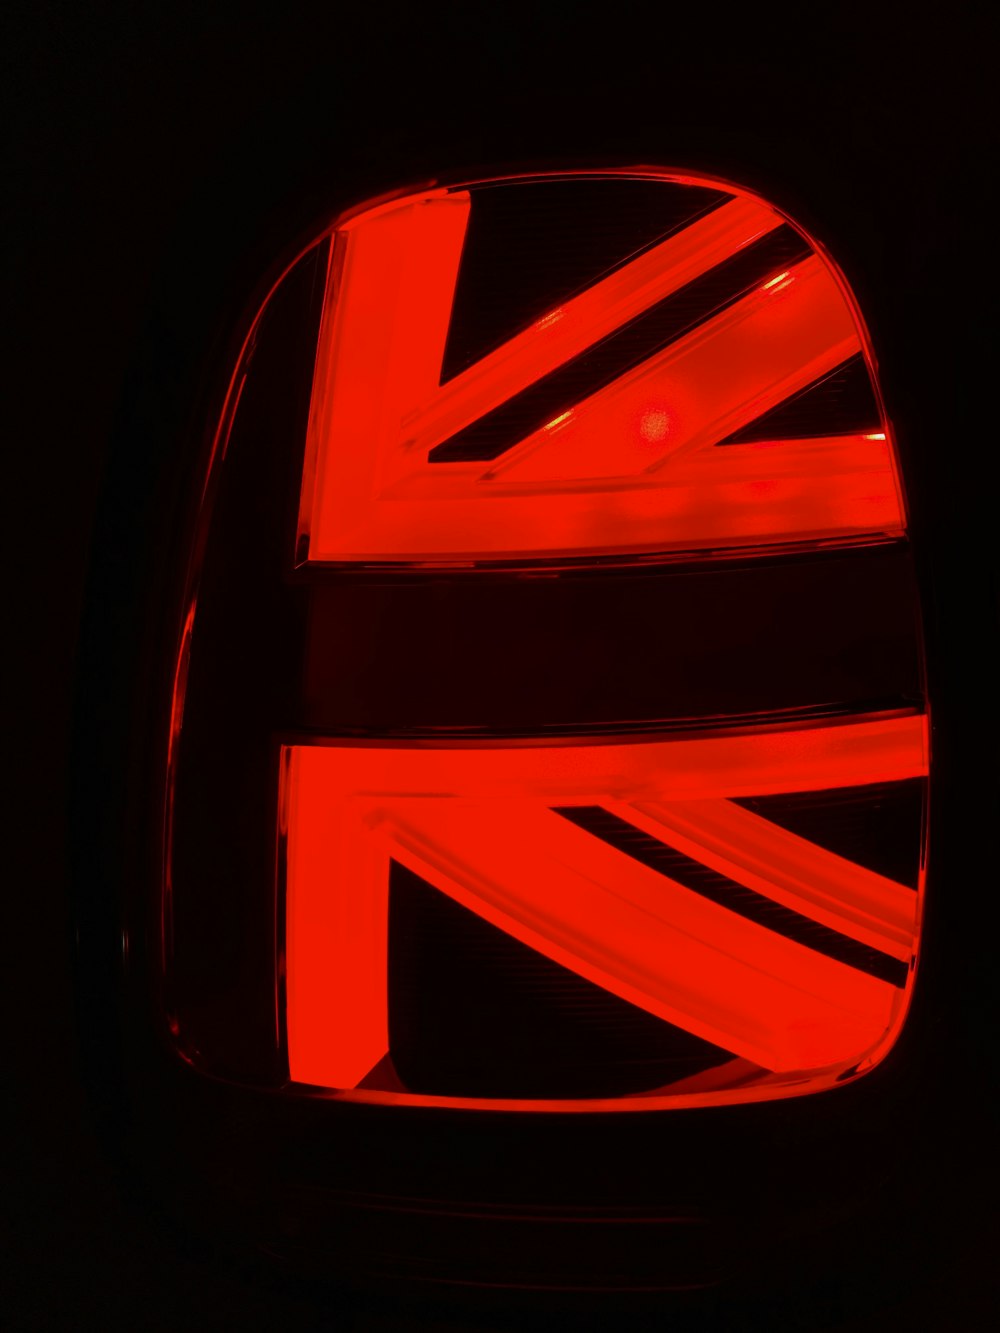 イギリスの国旗が描かれた車のエンブレム